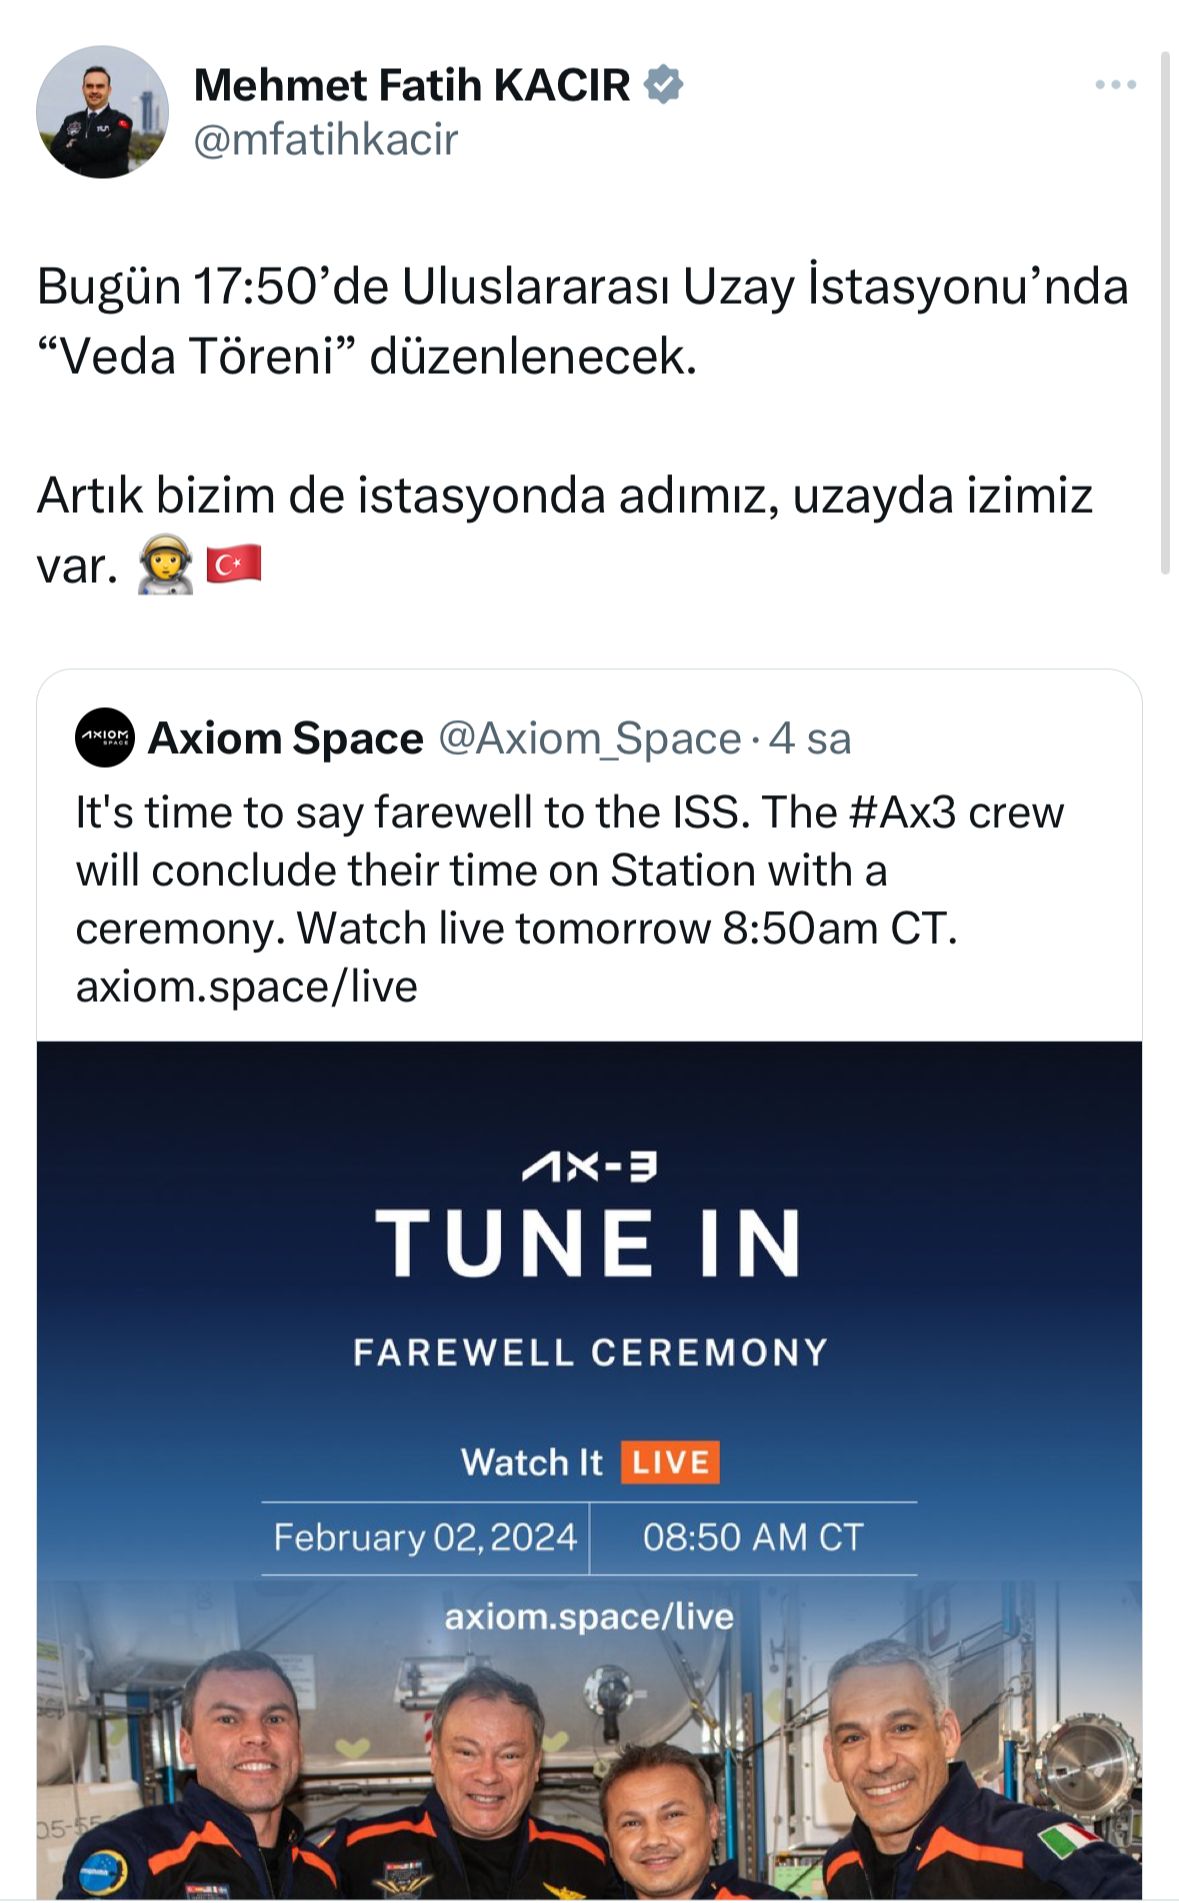 turk-astronot-alper-gezeravcinin-donus-tarihi-belli-oldu-uzay-istasyonunda-veda-toreni-duzenlenecek-yenicag-12.jpg